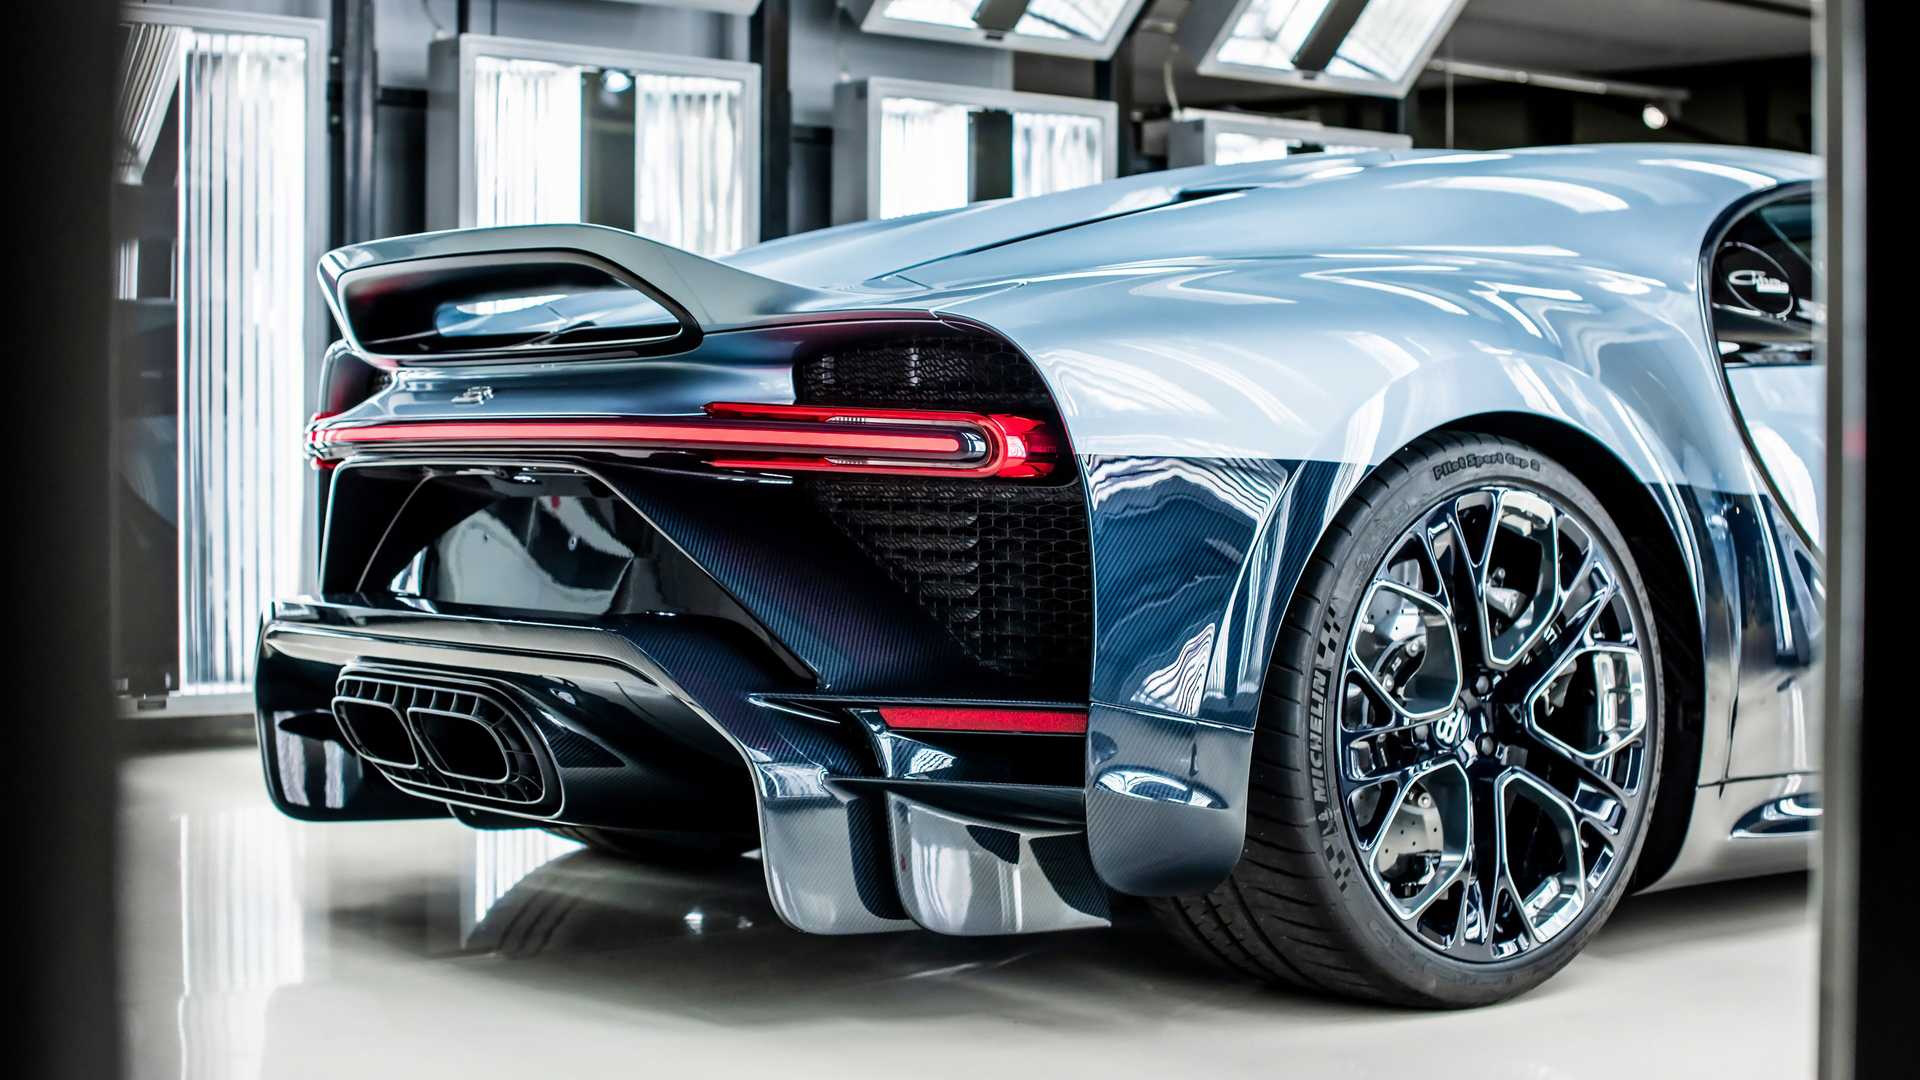 Kỷ lục xe đấu giá đắt nhất thế giới chạm mốc 300 tỉ đồng là Bugatti Chiron Profilee - Ảnh 9.